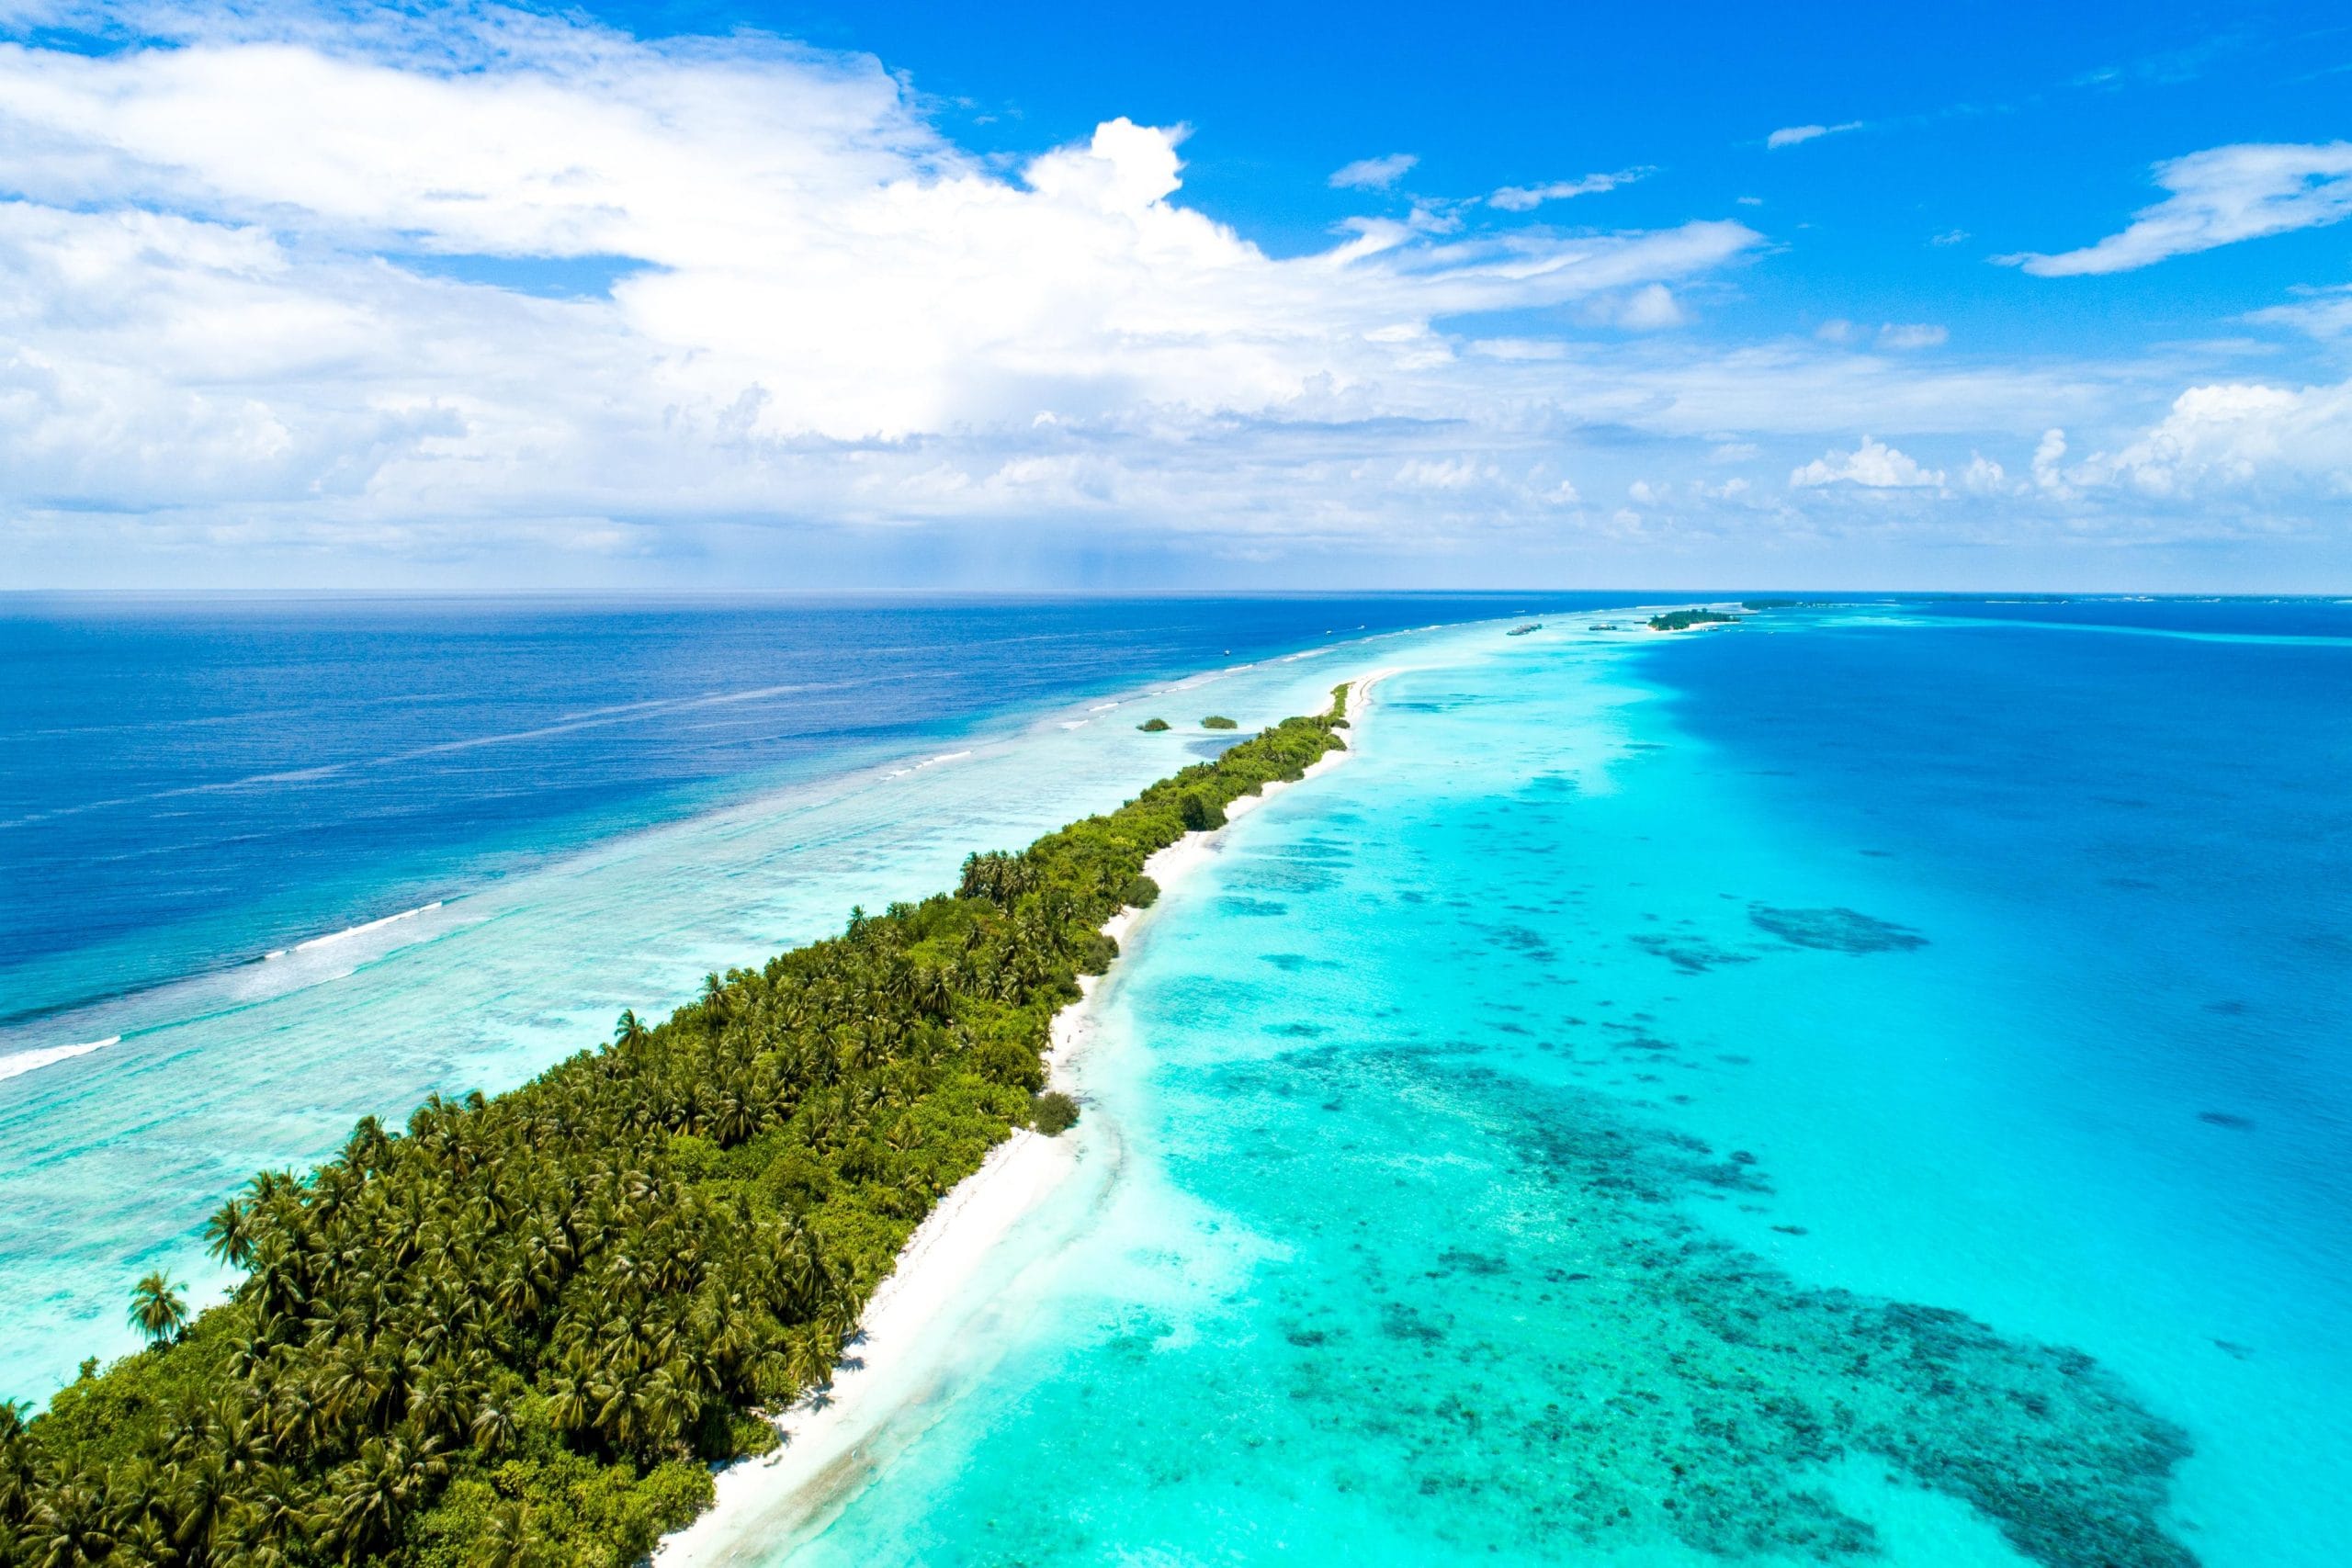 maldives places to visit images